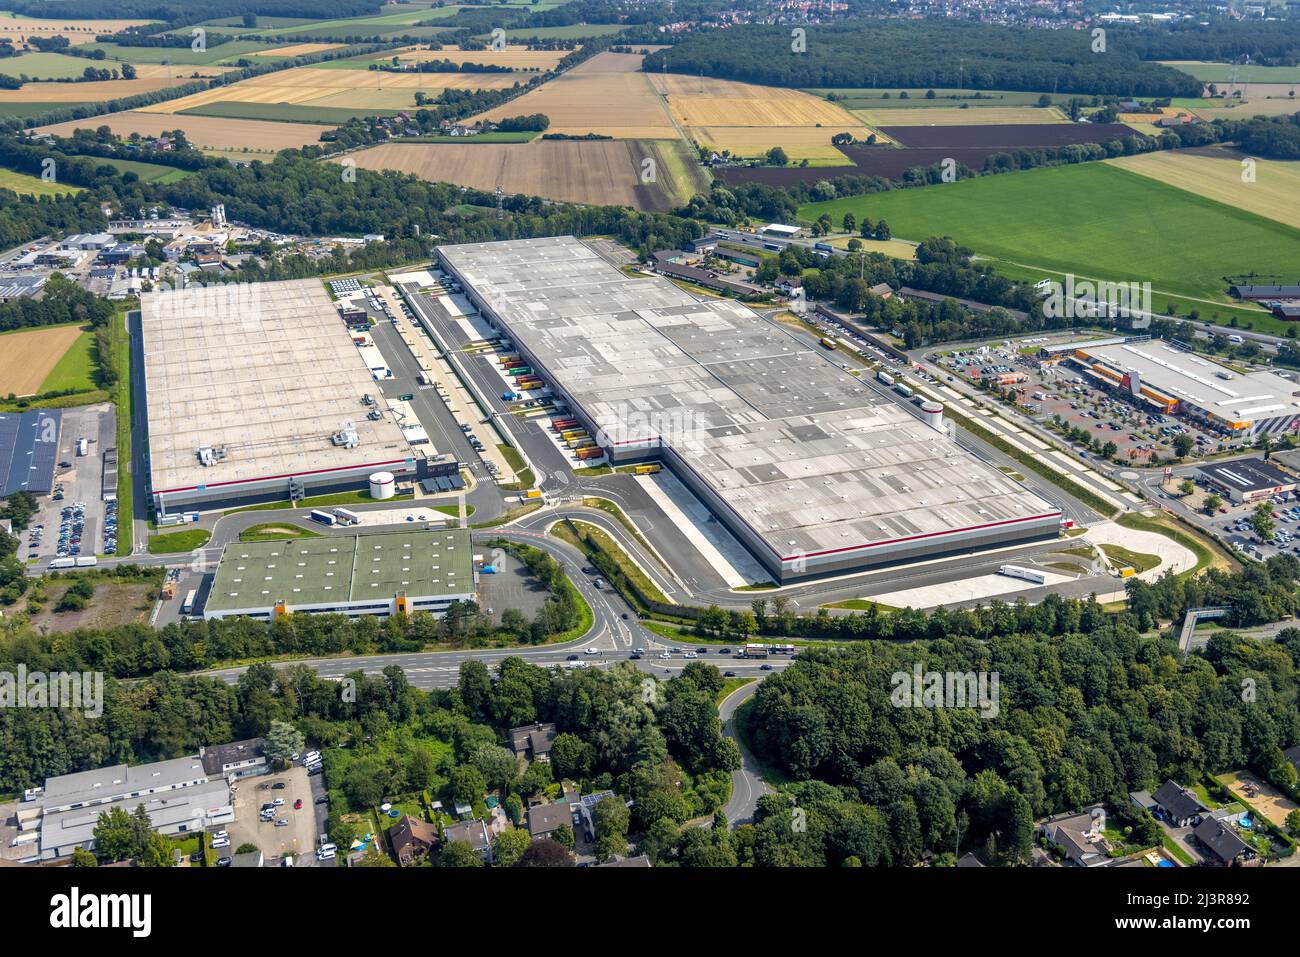 Aerial view, Unna / Kamen industrial estate with P3 Kamen logistics park, Kamen, Ruhr region, North Rhine-Westphalia, Germany, Luftbild, Gewerbegebiet Stock Photo